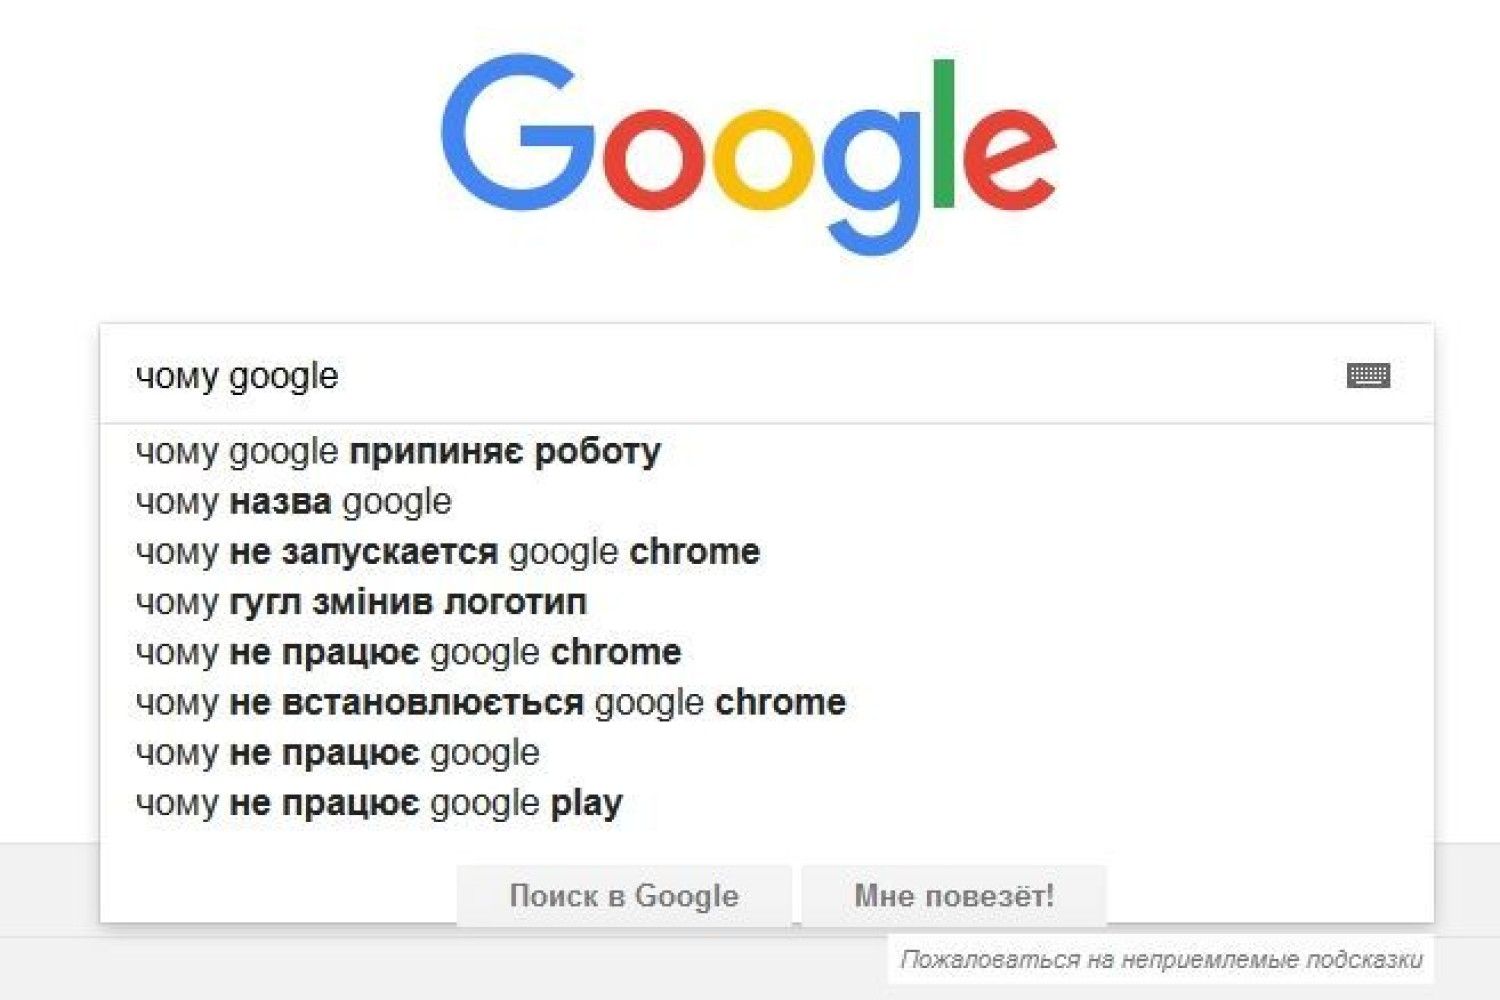 Google включается. Гугл Украина на русском. Гугл мне повезет команды. Включается гугл ТВ.